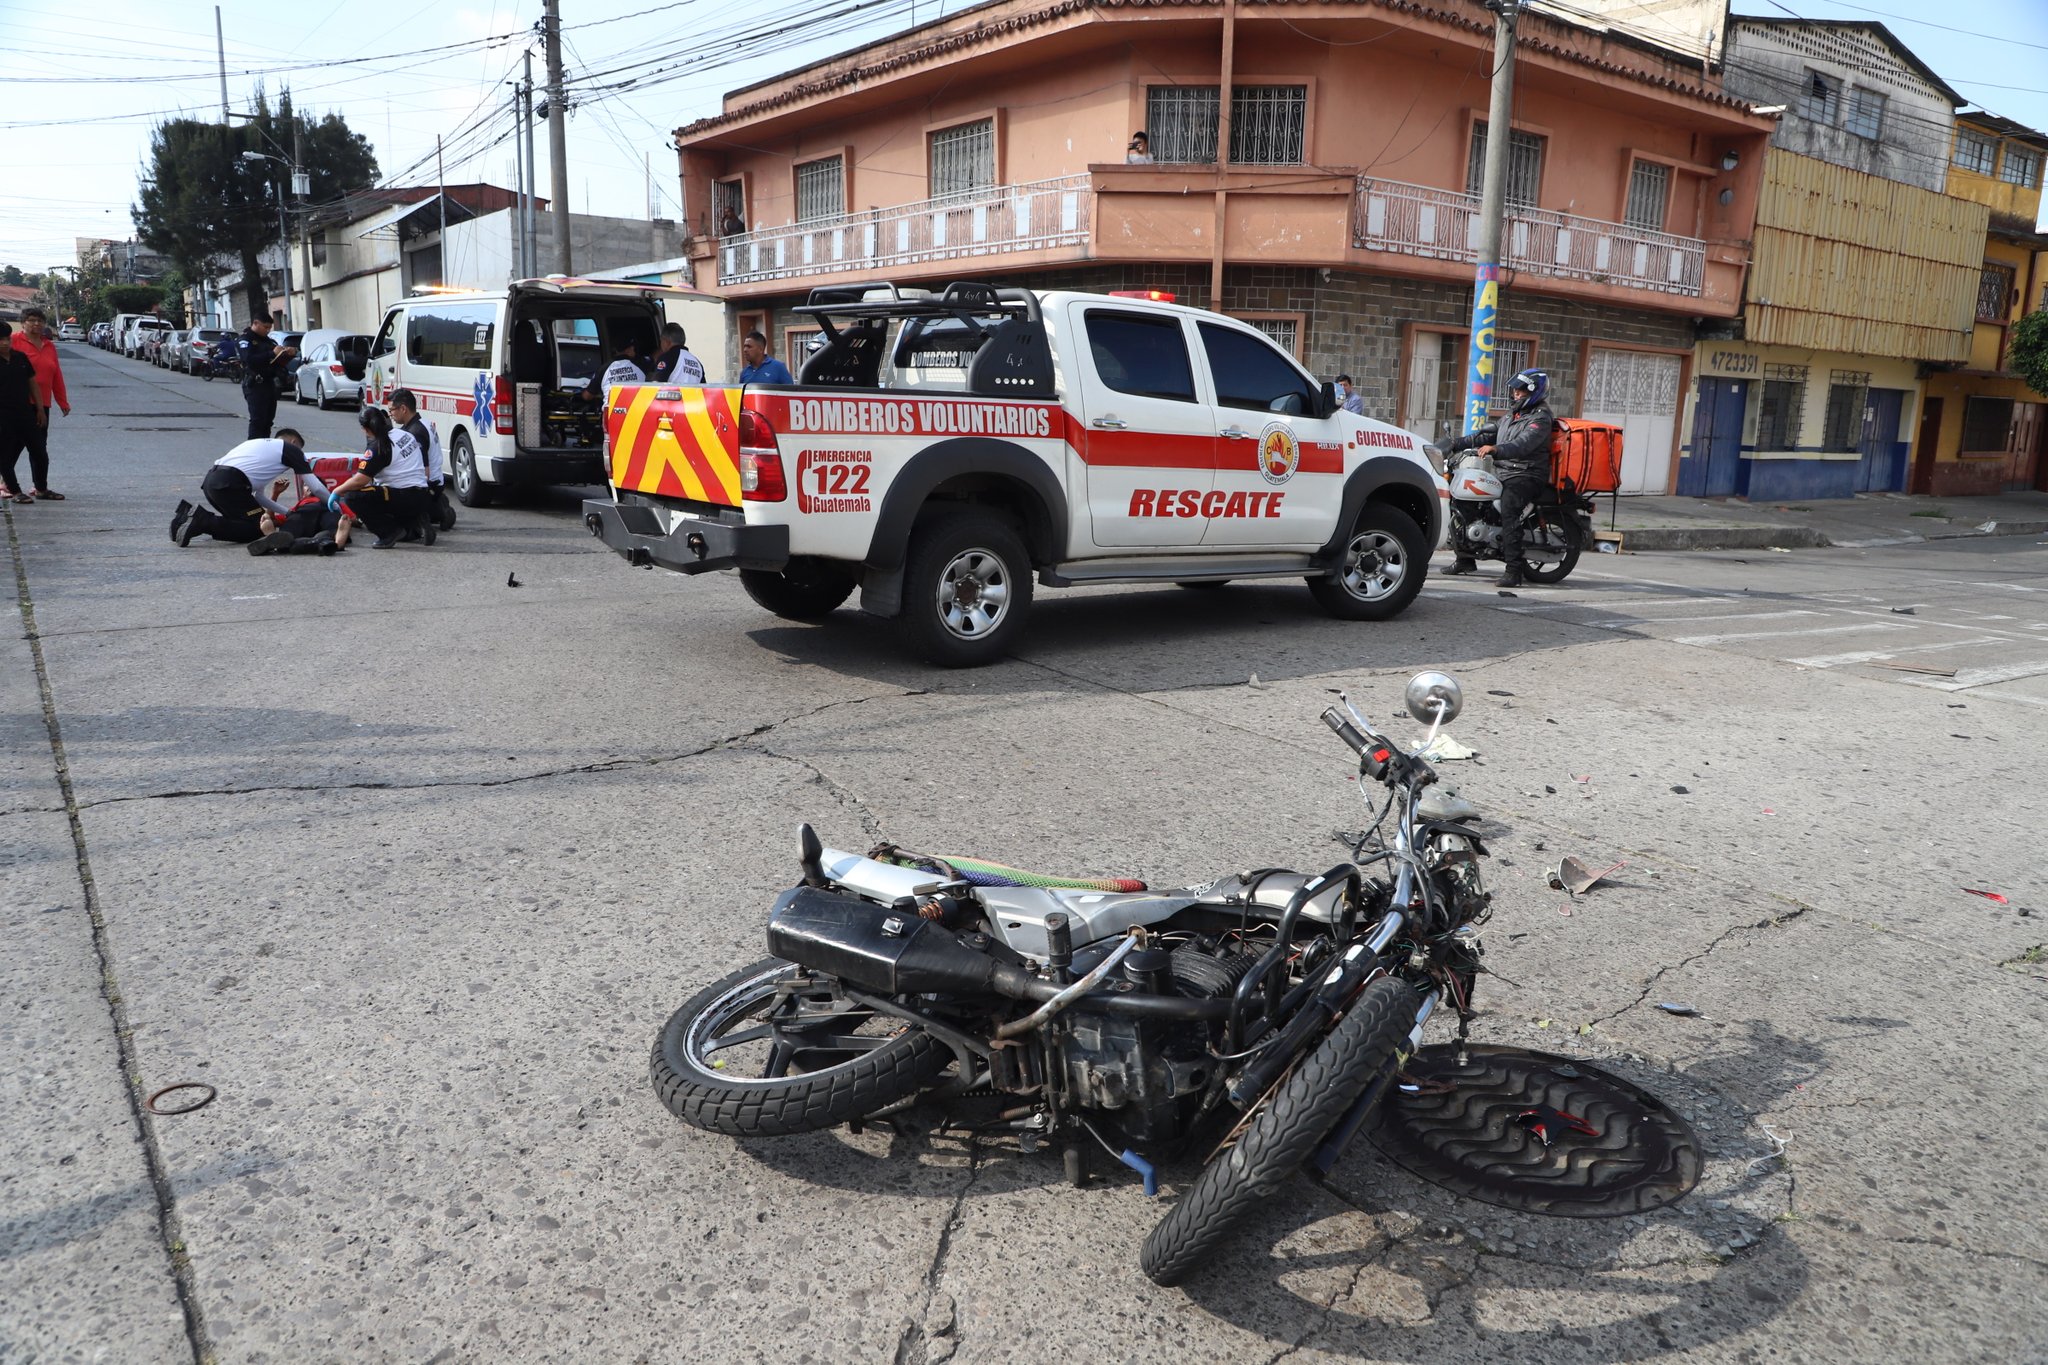 A diario en la ciudad se reportan un promedio de ocho accidentes de motocicleta. (Foto Prensa Libre: Bmoberos Voluntarios)